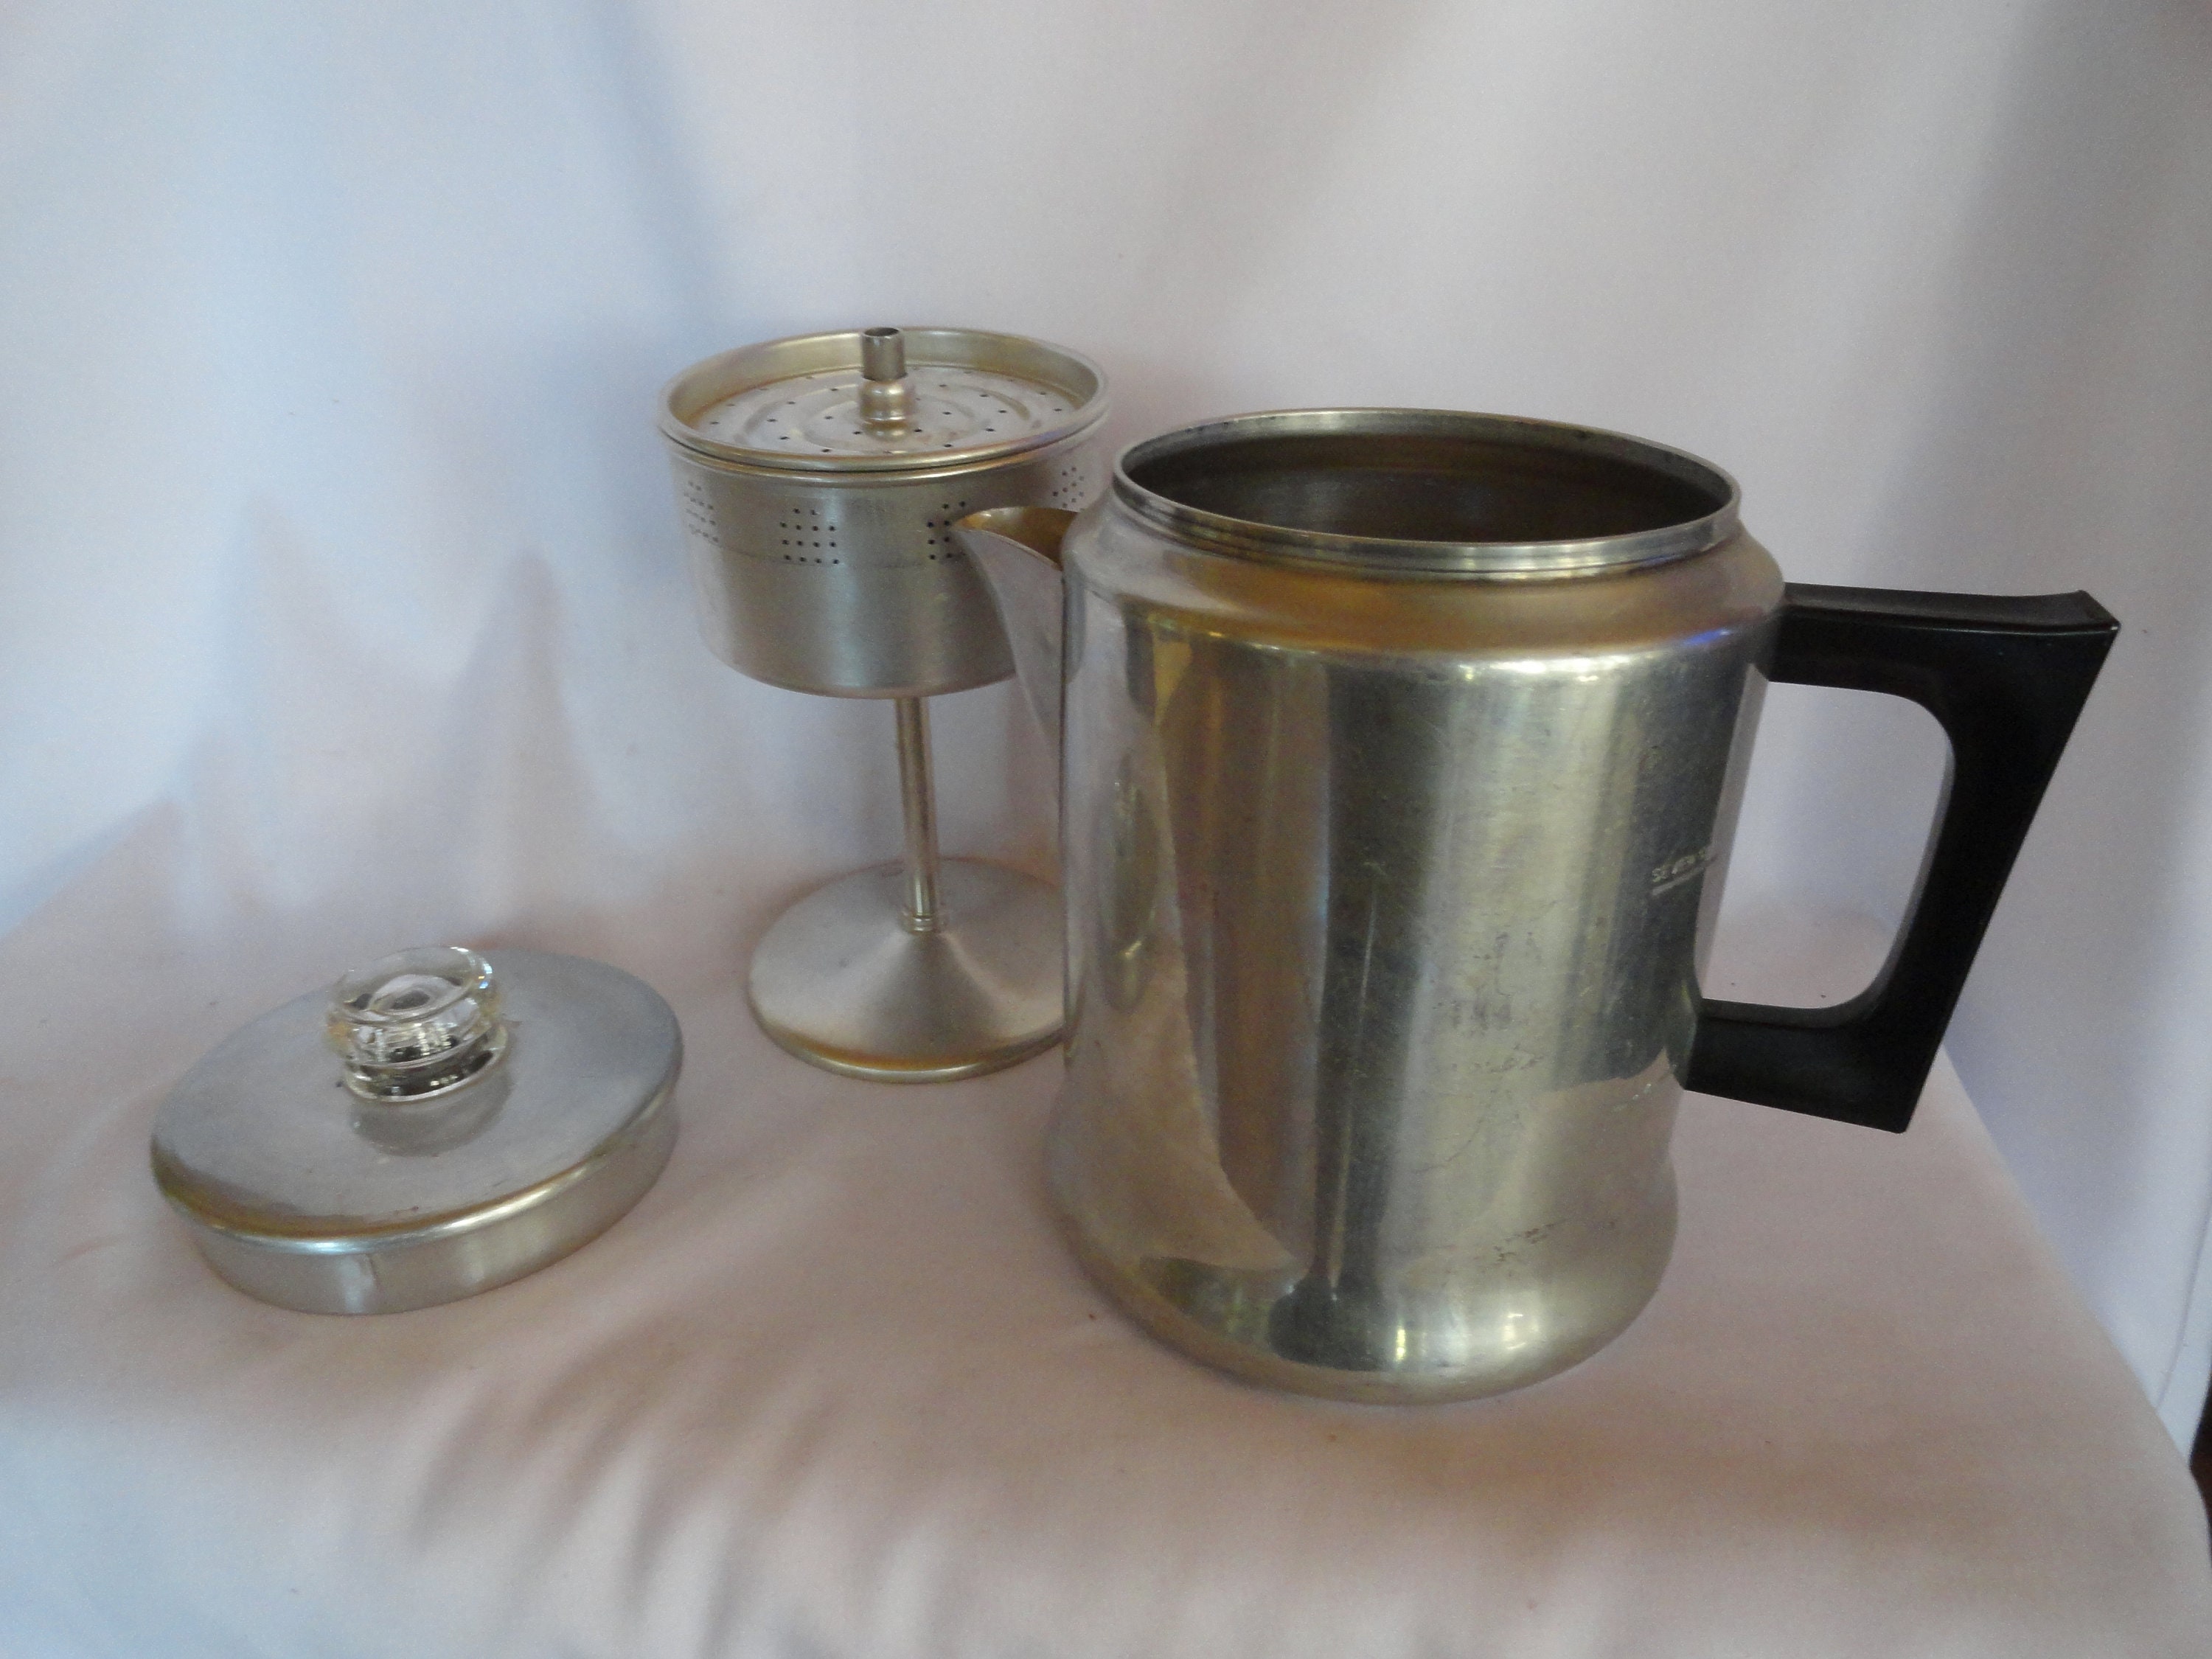 Vintage Mini Comet Aluminum Coffee Pot - 2 Cup Size